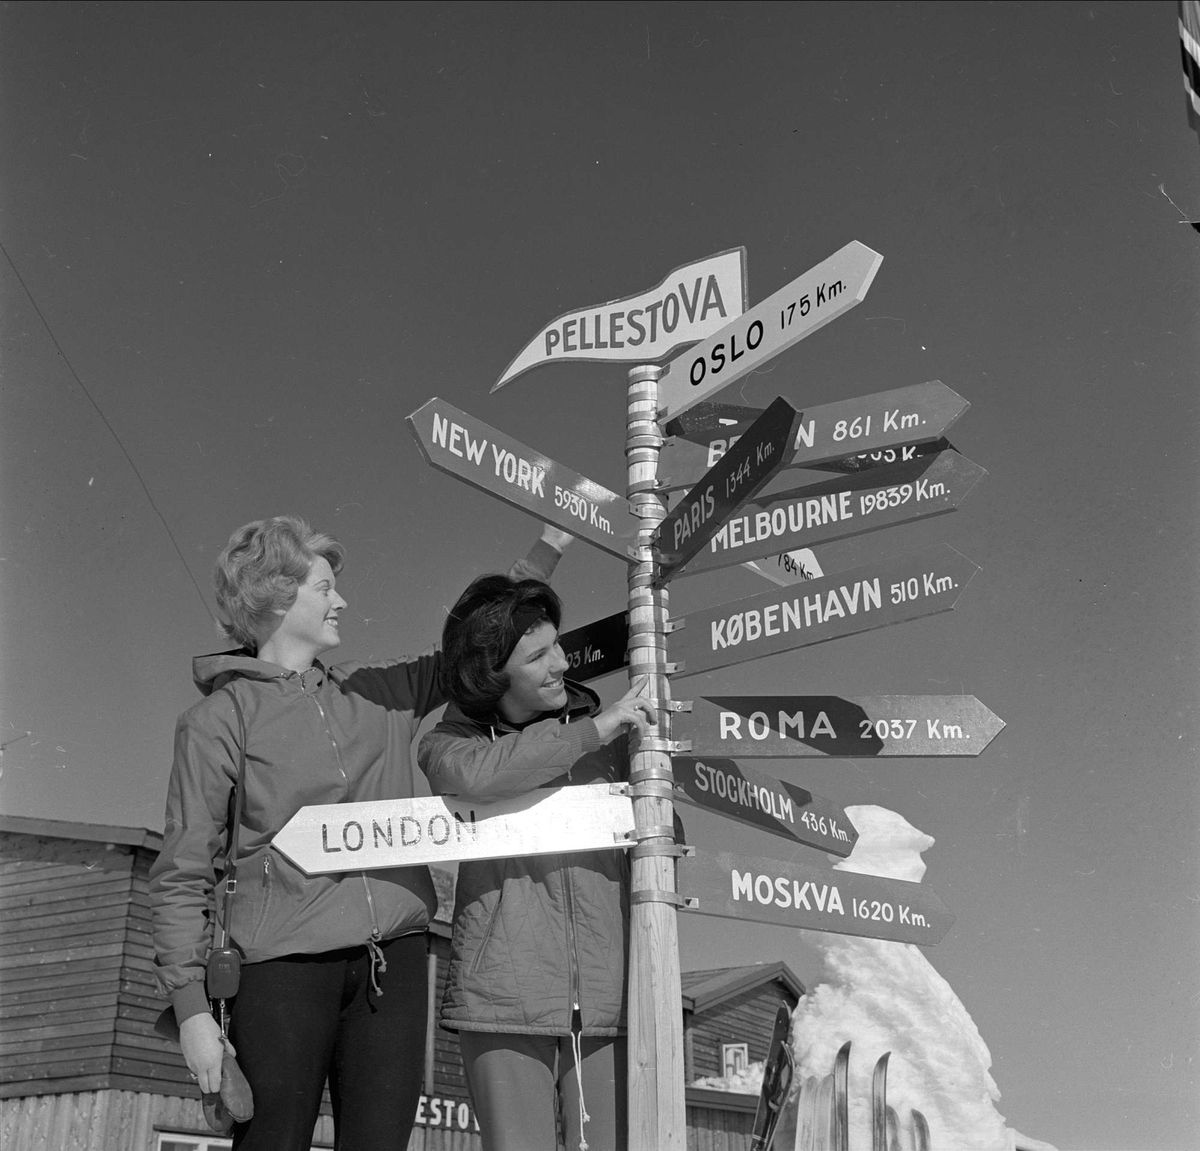 Øyer, Oppland, 25.03.1964. To kvinner ved veiviser på Pellestova.